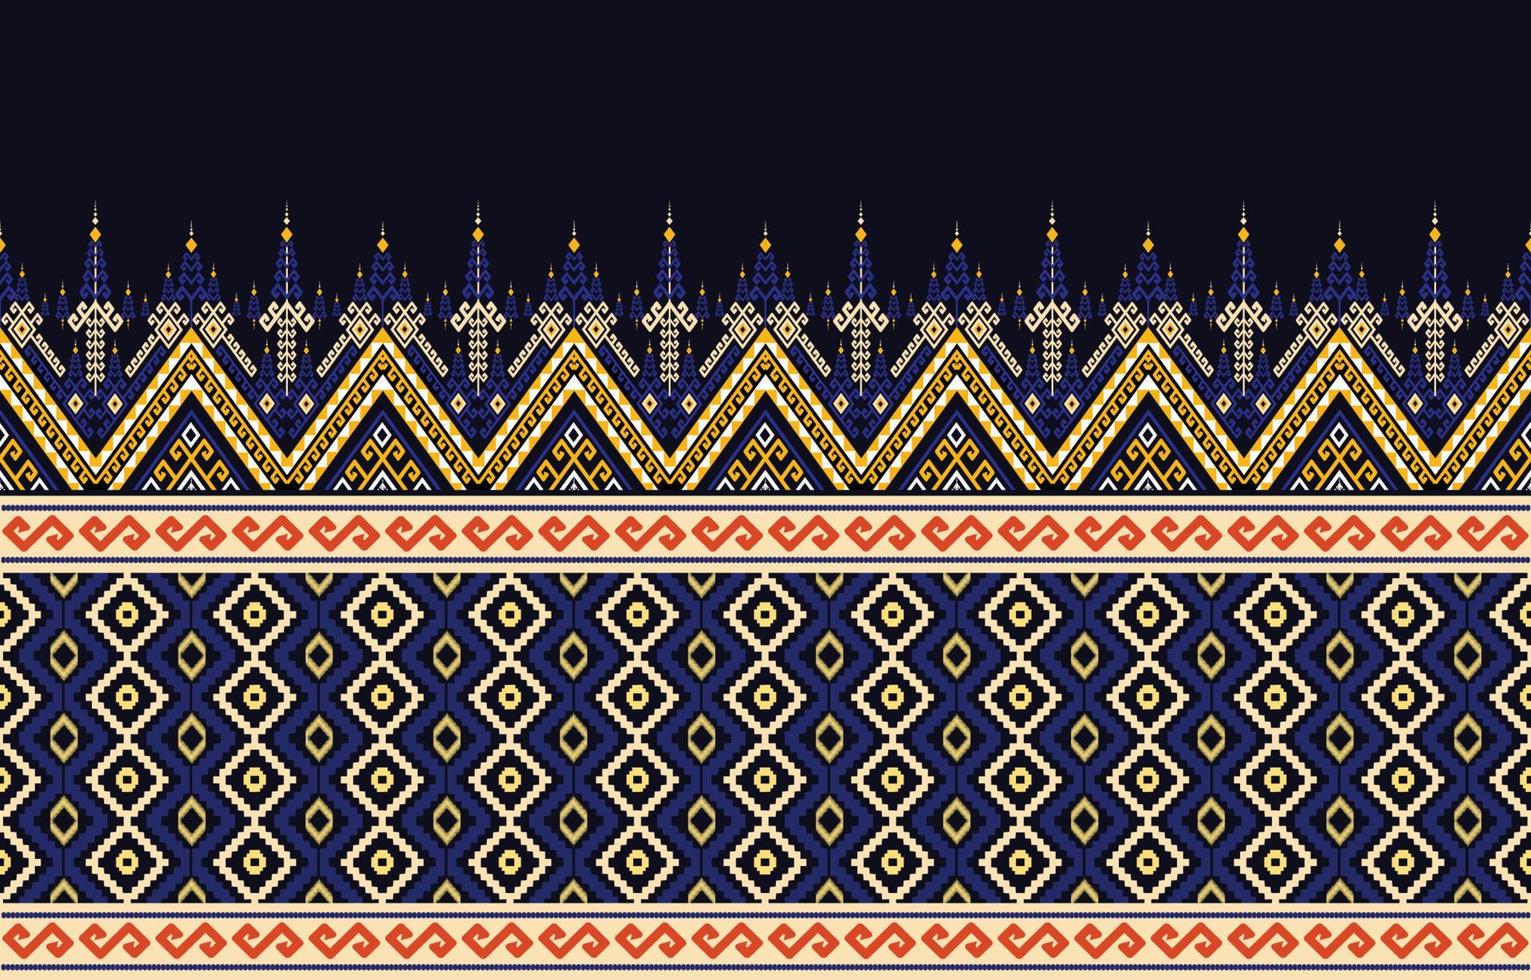 vetor de padrão geométrico étnico. nativo afro-americano mexicano indonésio motivo asteca e elementos de padrão boêmio. projetado para plano de fundo, papel de parede, impressão, embrulho, azulejo, motivo asteca batik.vector